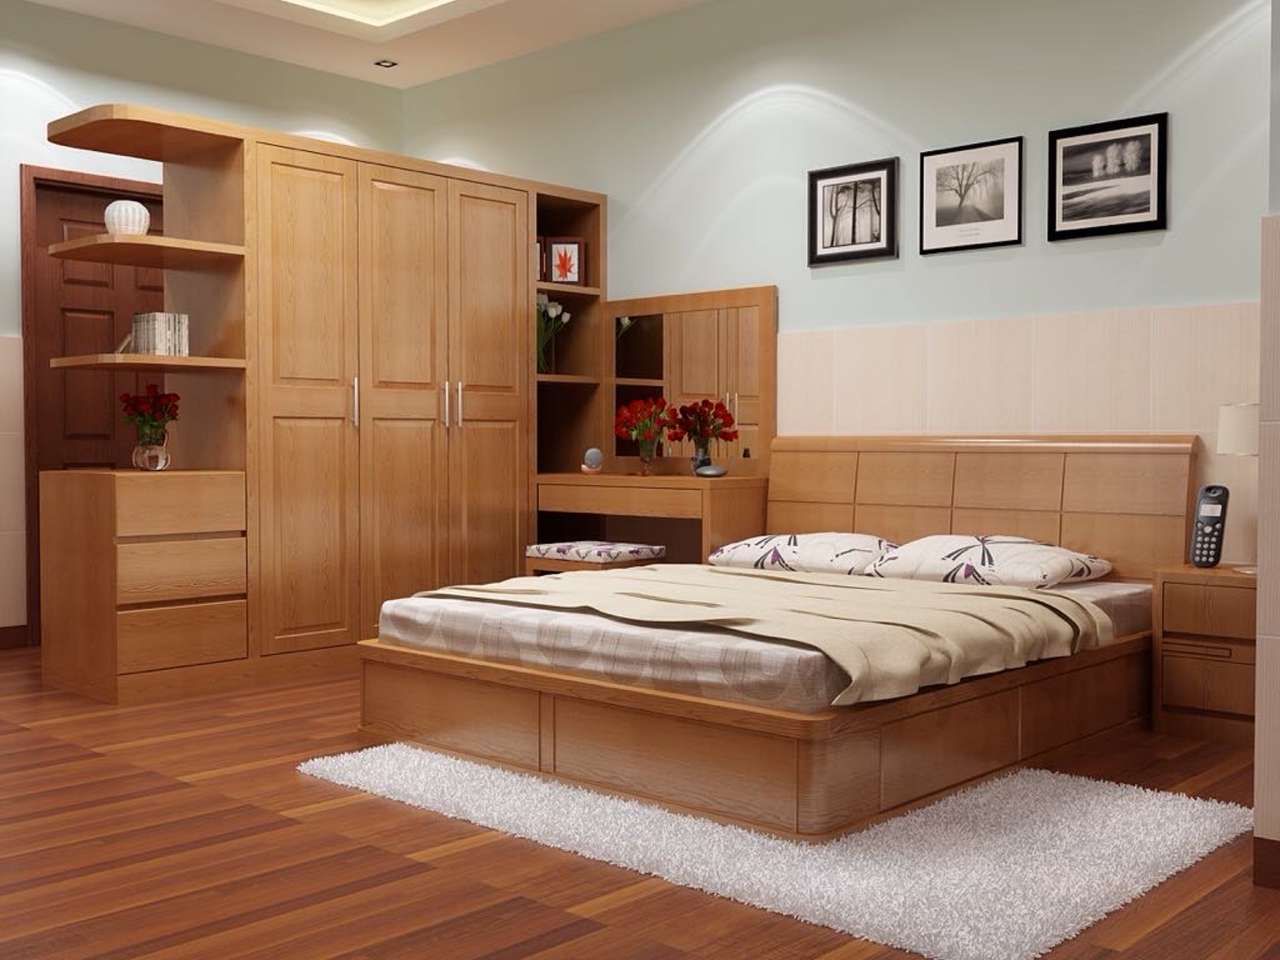 Giường ngủ gỗ sồi vân gỗ - Thiết kế độc đáo với vân gỗ tự nhiên tinh tế, đem đến không gian nghỉ ngơi gần gũi với thiên nhiên.